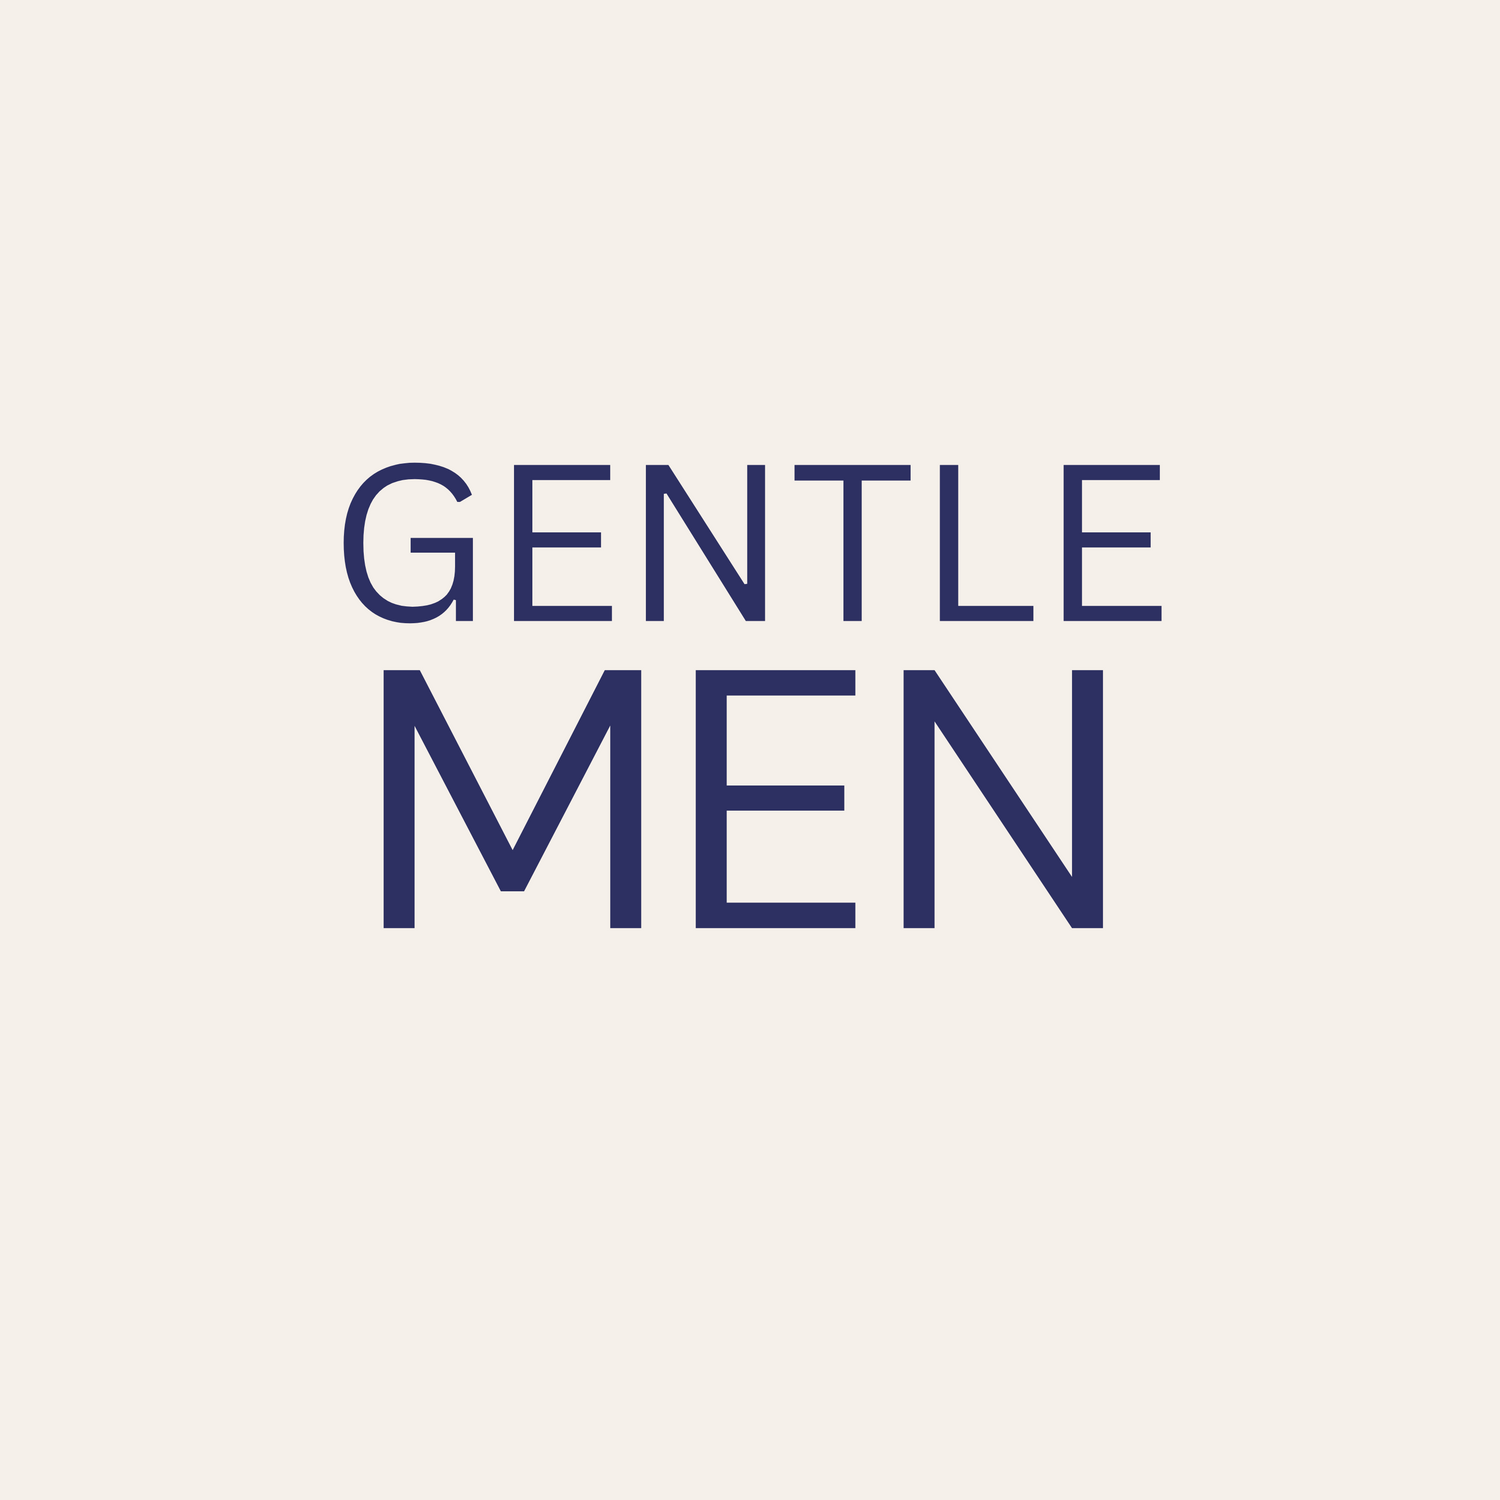 GENTLE(MAN)